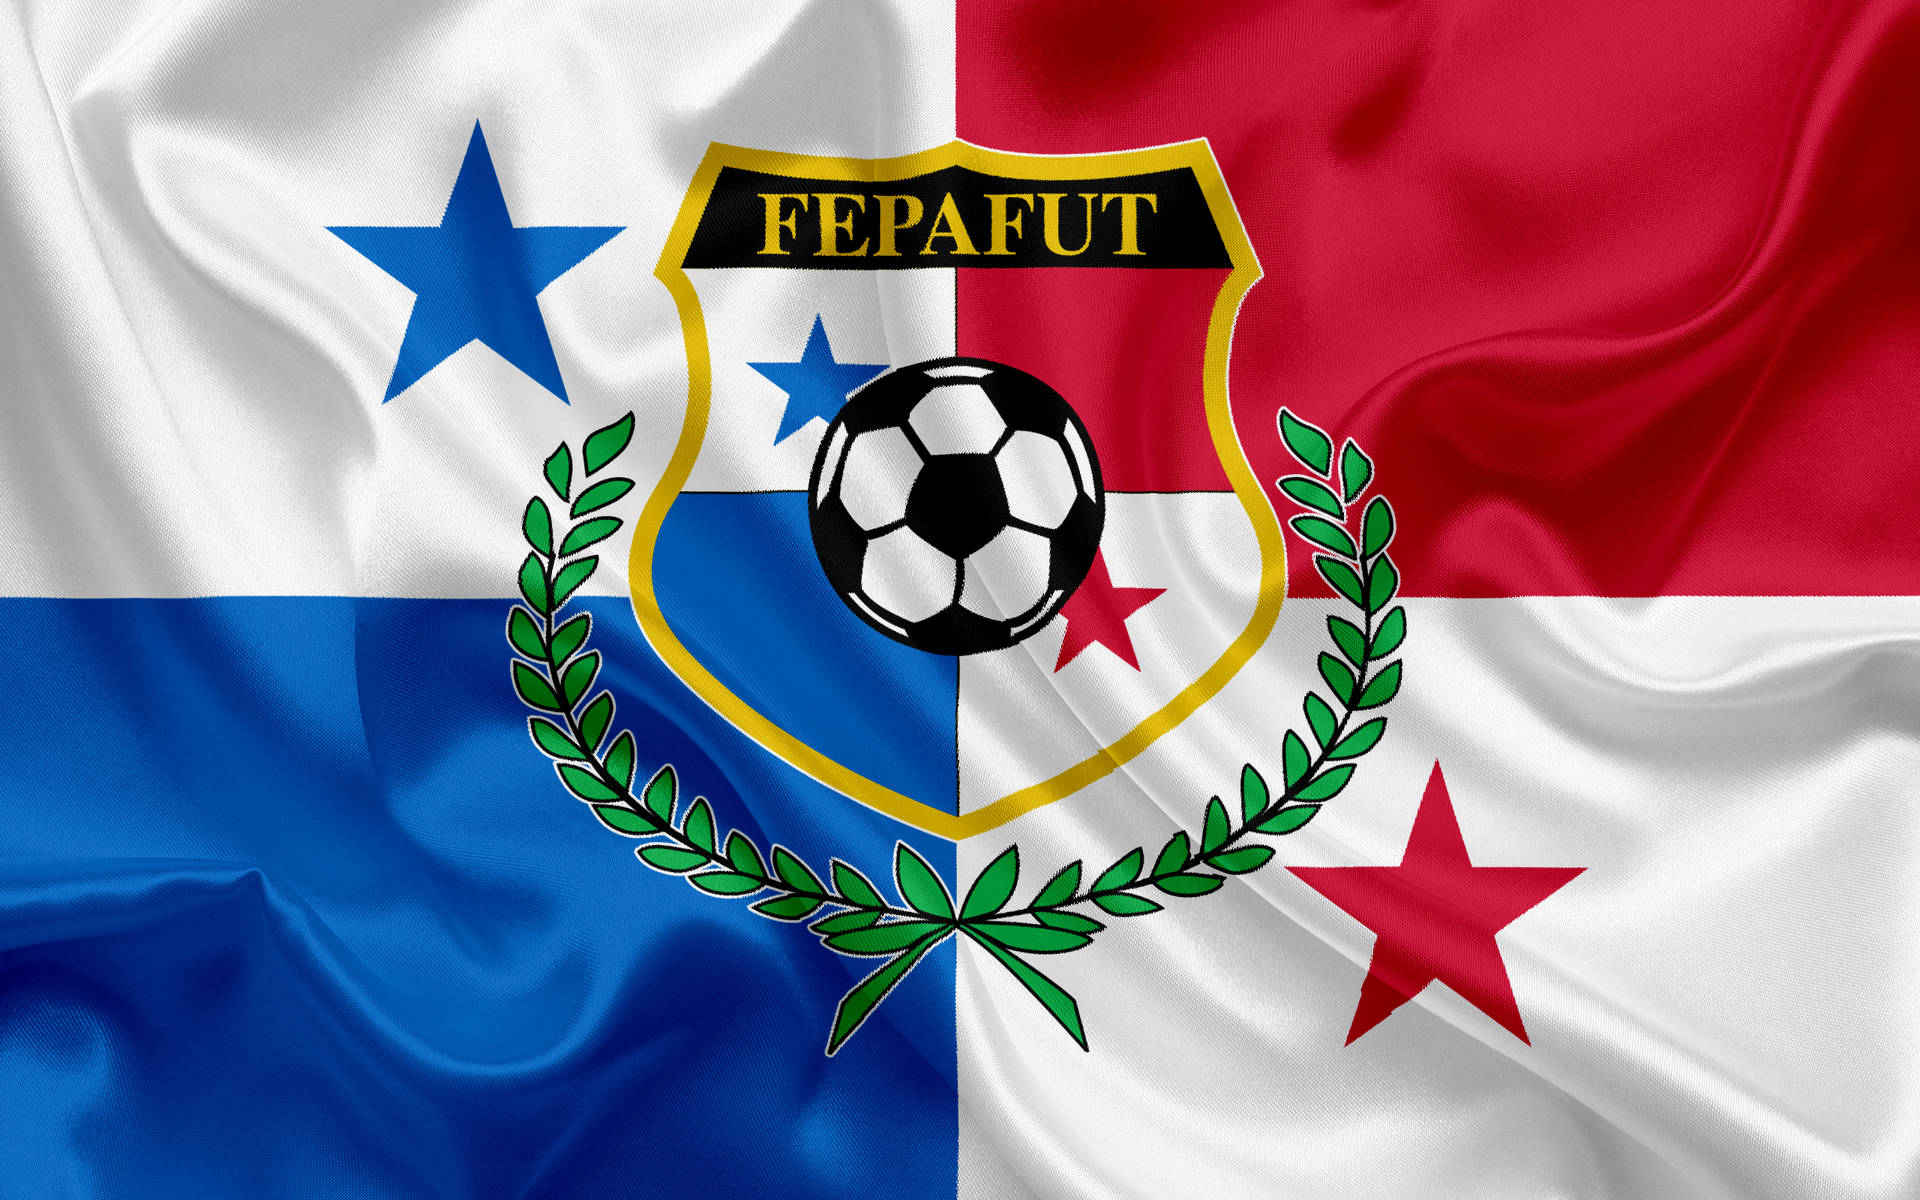 Panamanationalmannschaft Satin Flagge Wallpaper